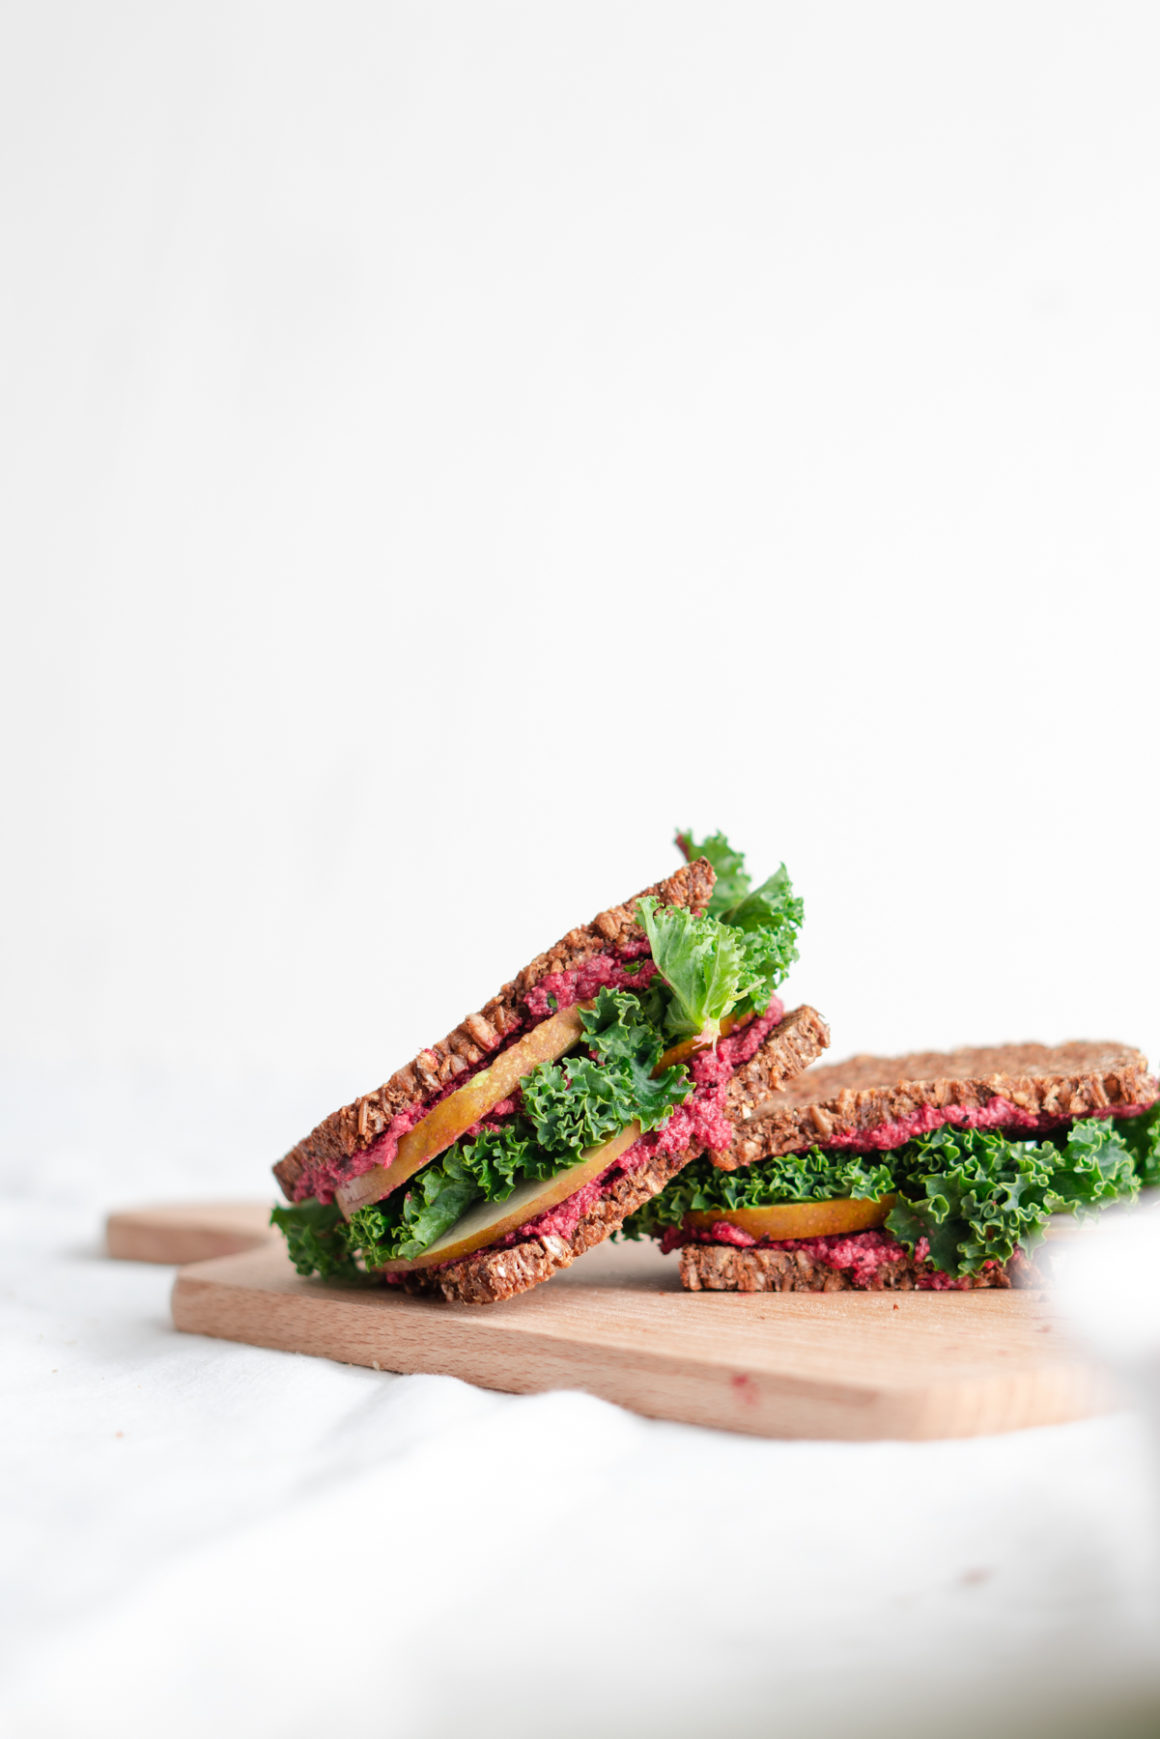 Veganes Sandwich mit Birne, Federkohl und Randenaufstrich